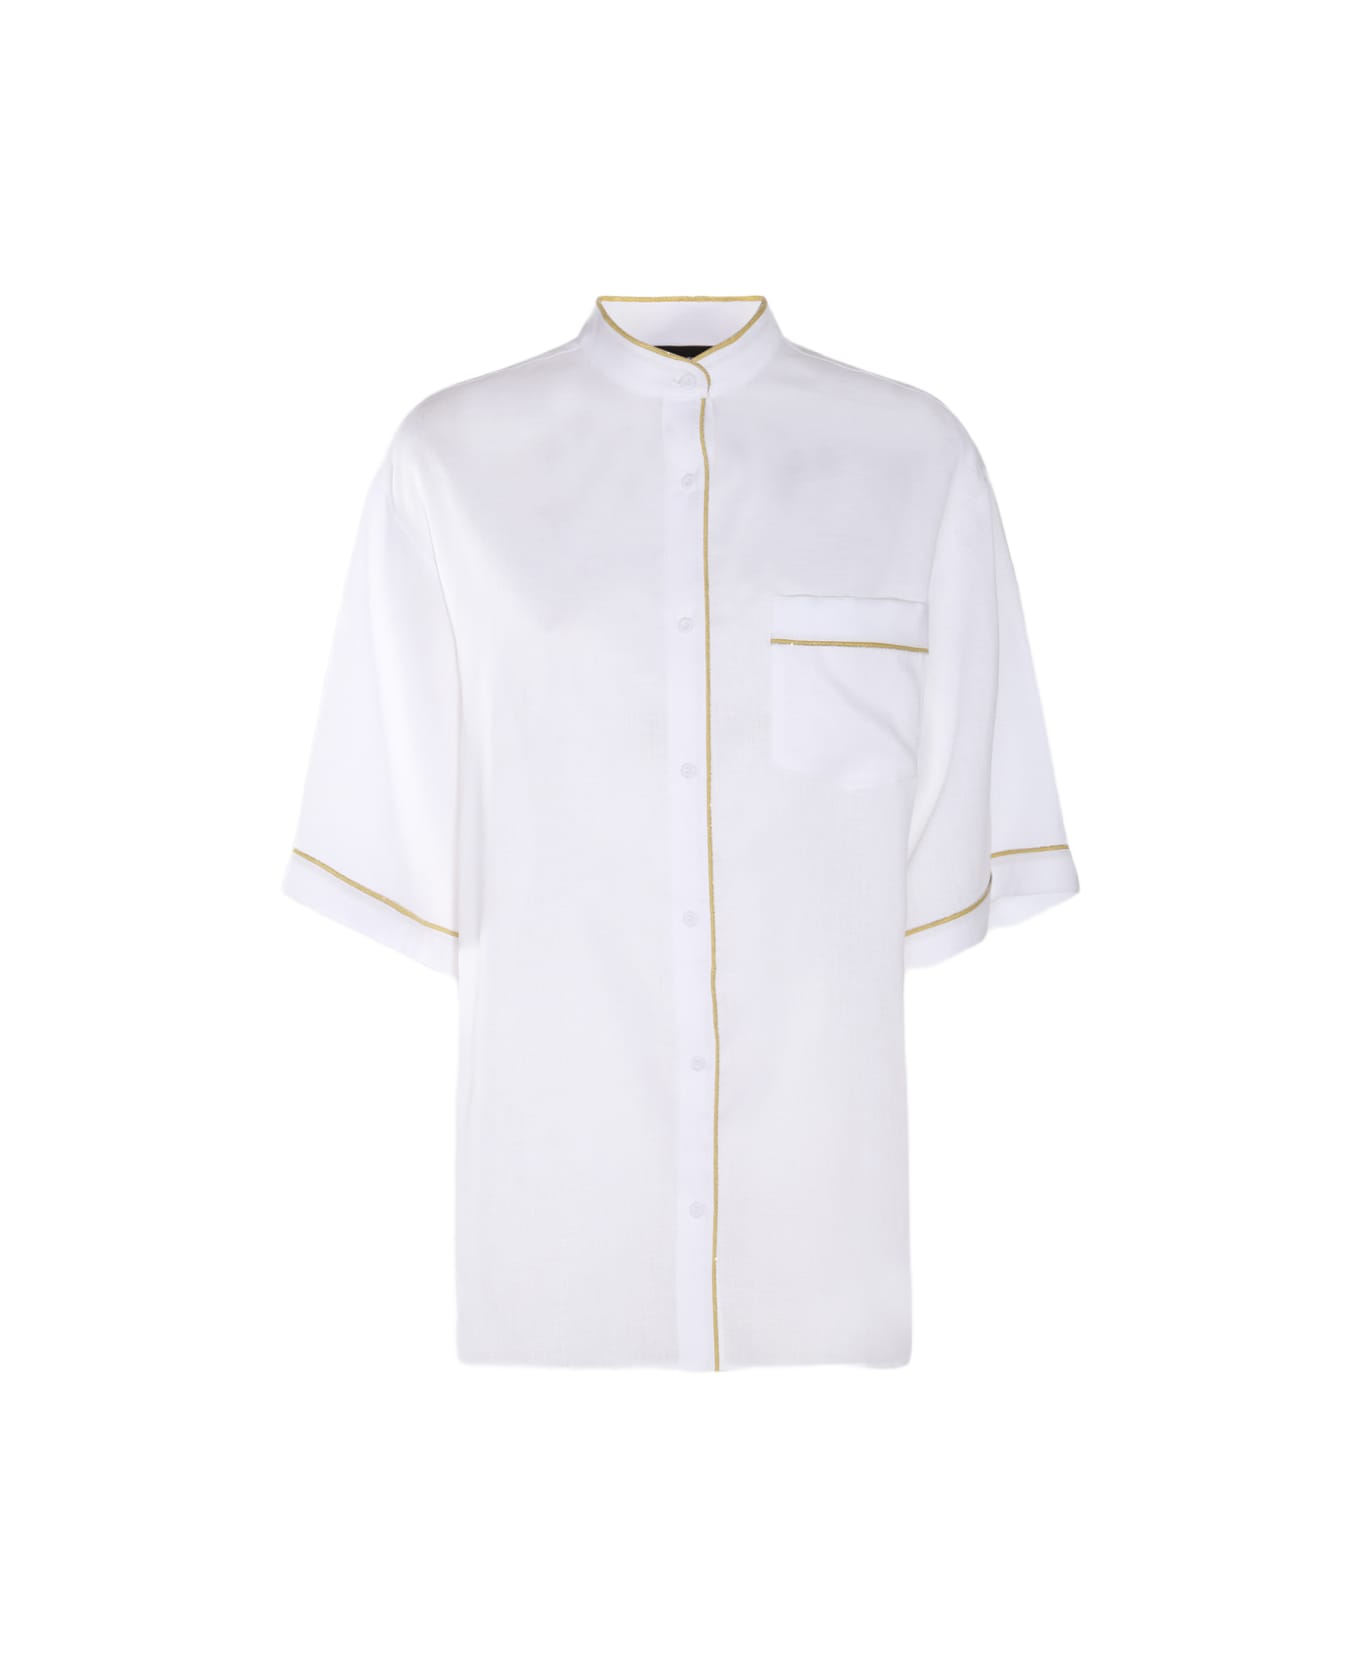 Fabiana Filippi White Cotton Shirt - White